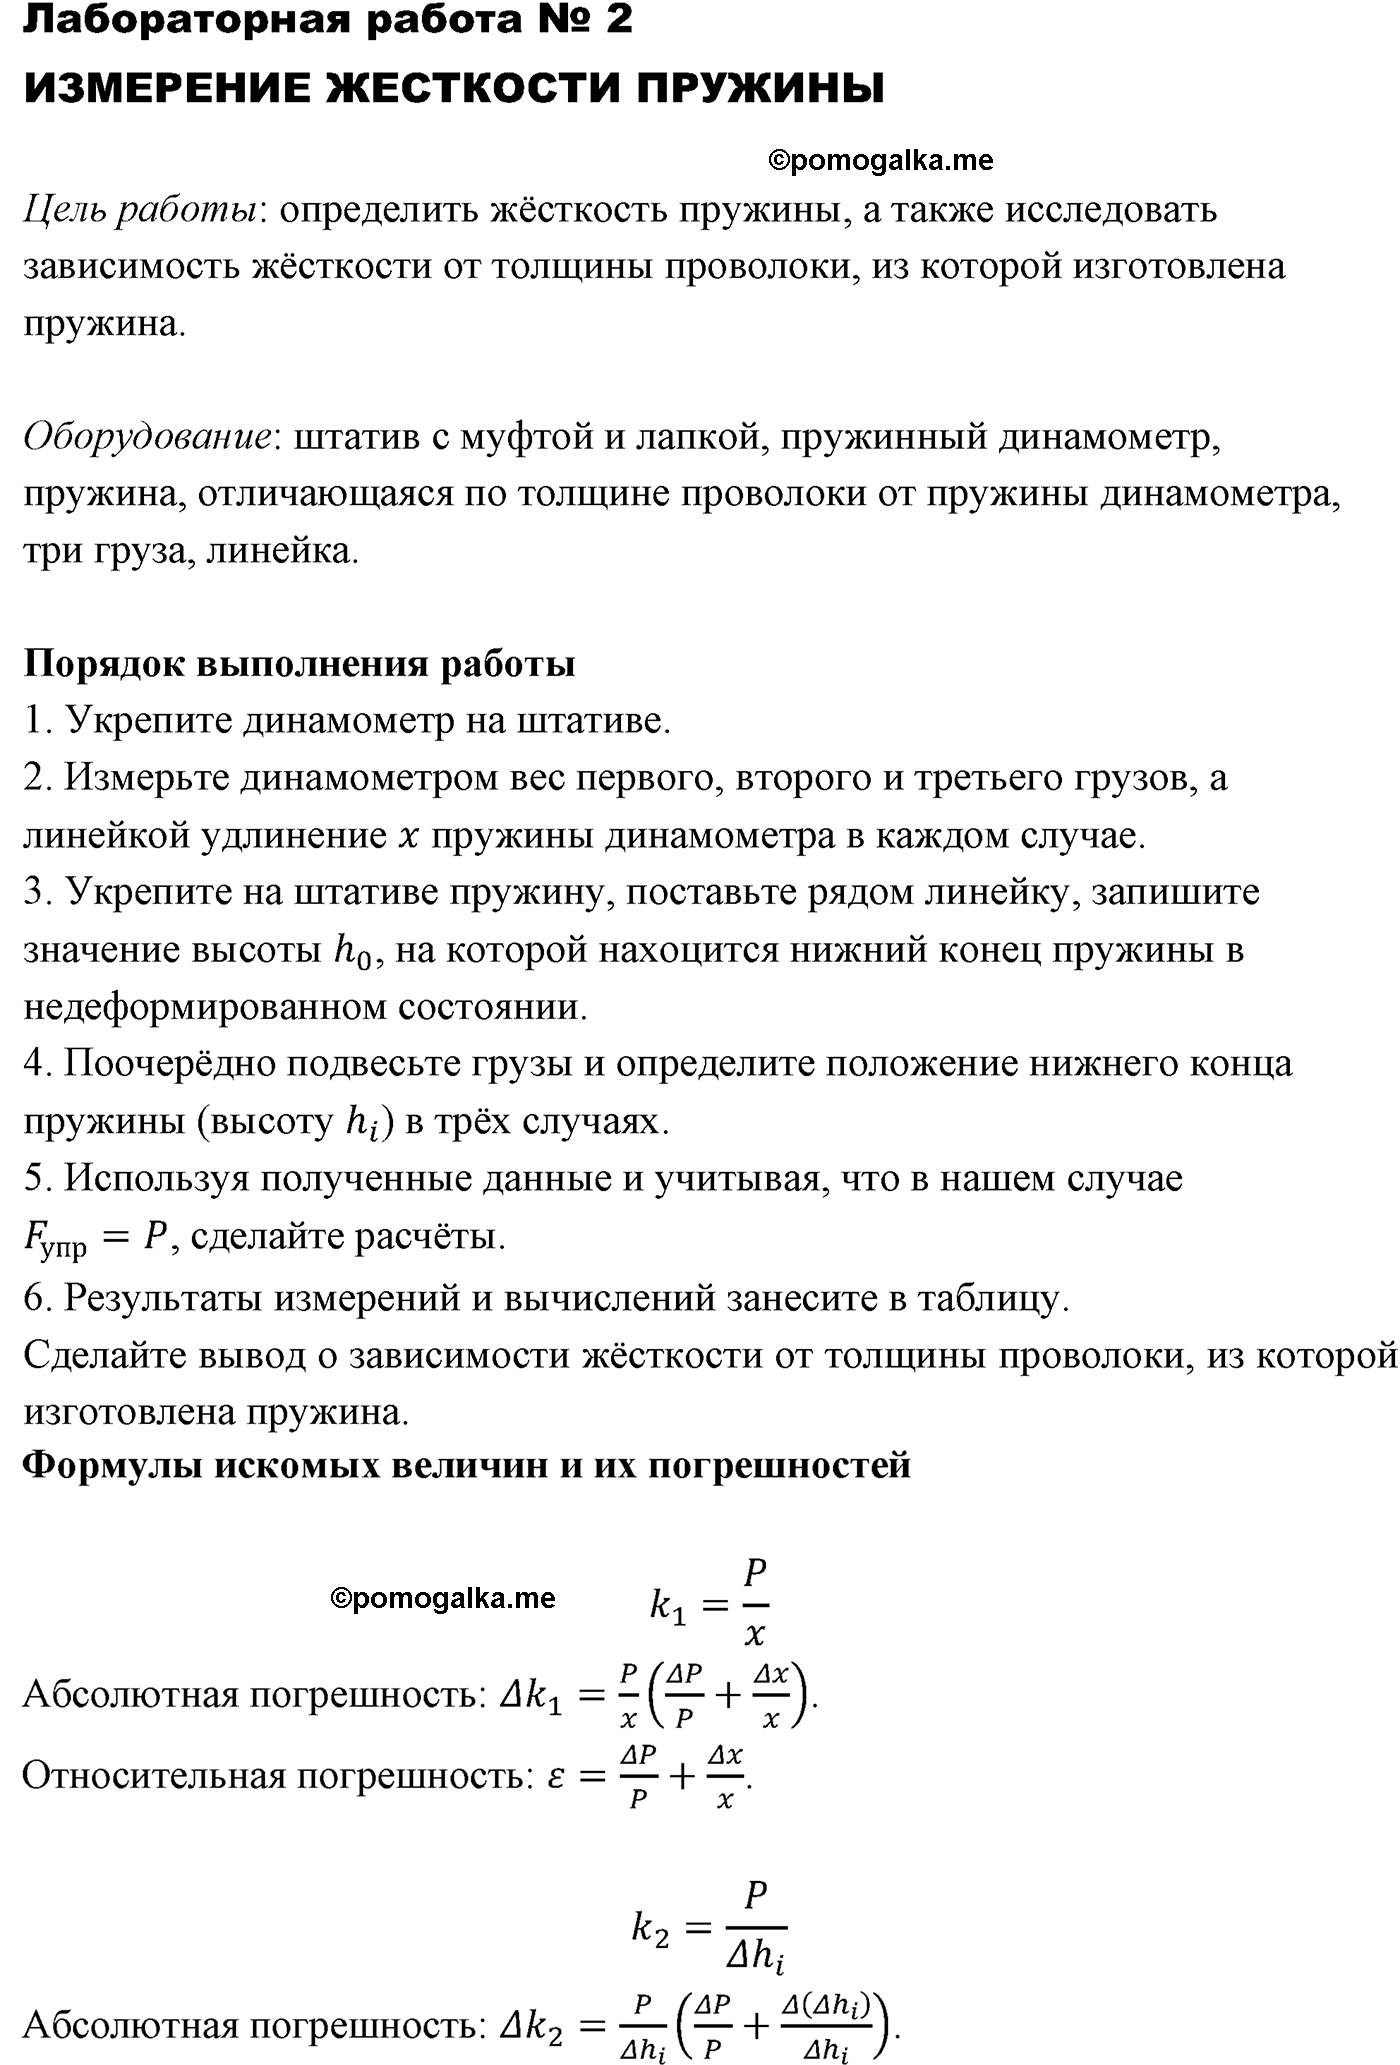 лабораторная работа №2 физика 10 класс Микишев